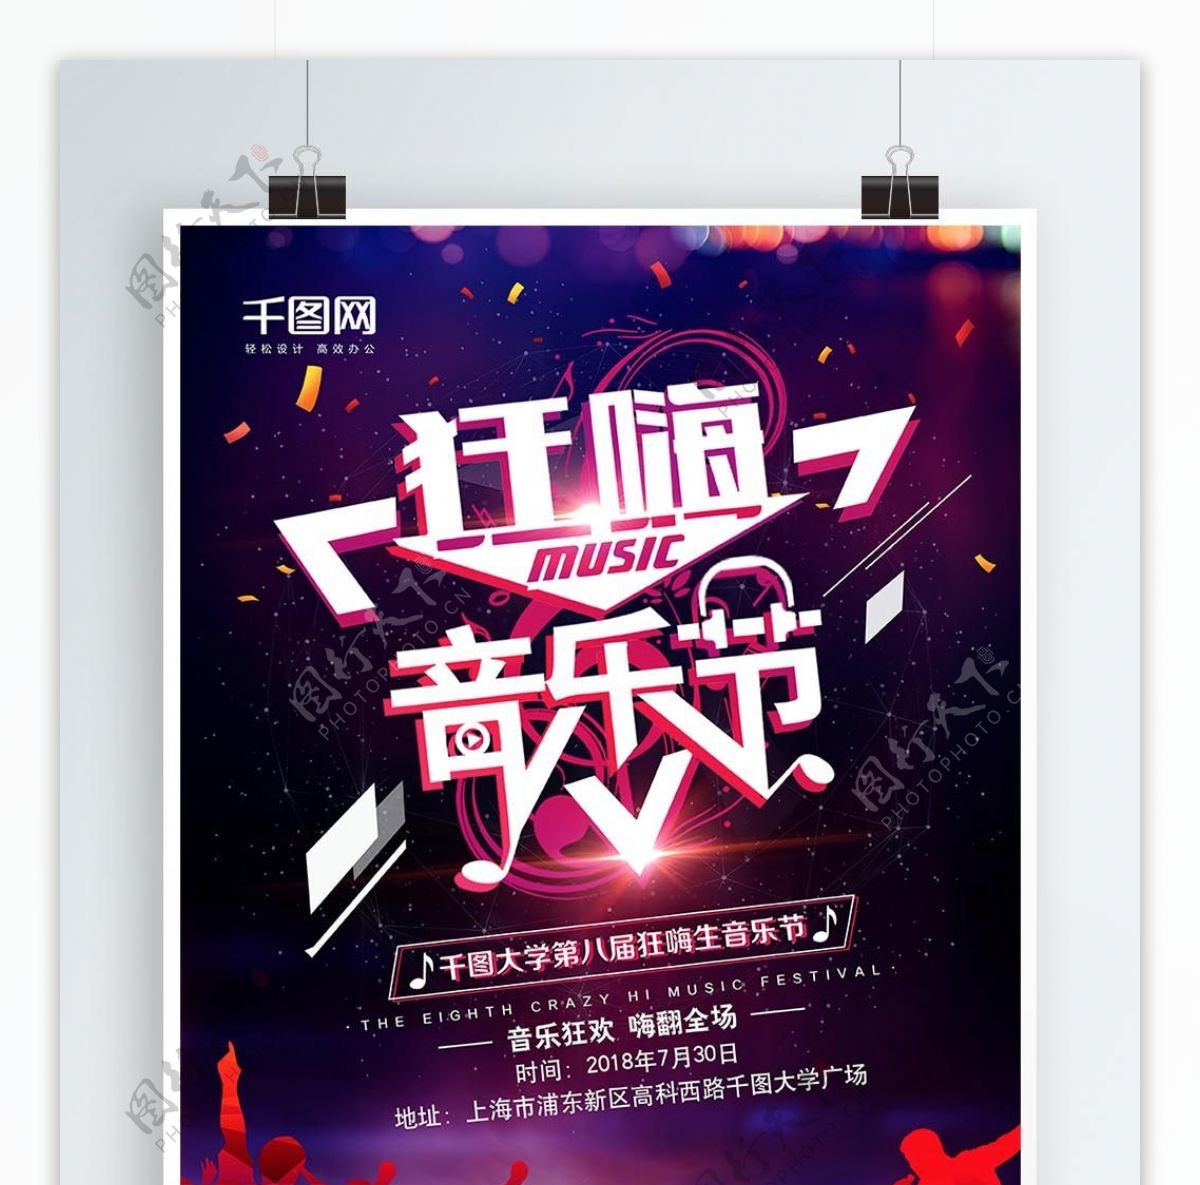 创意酷炫狂嗨音乐节宣传海报设计